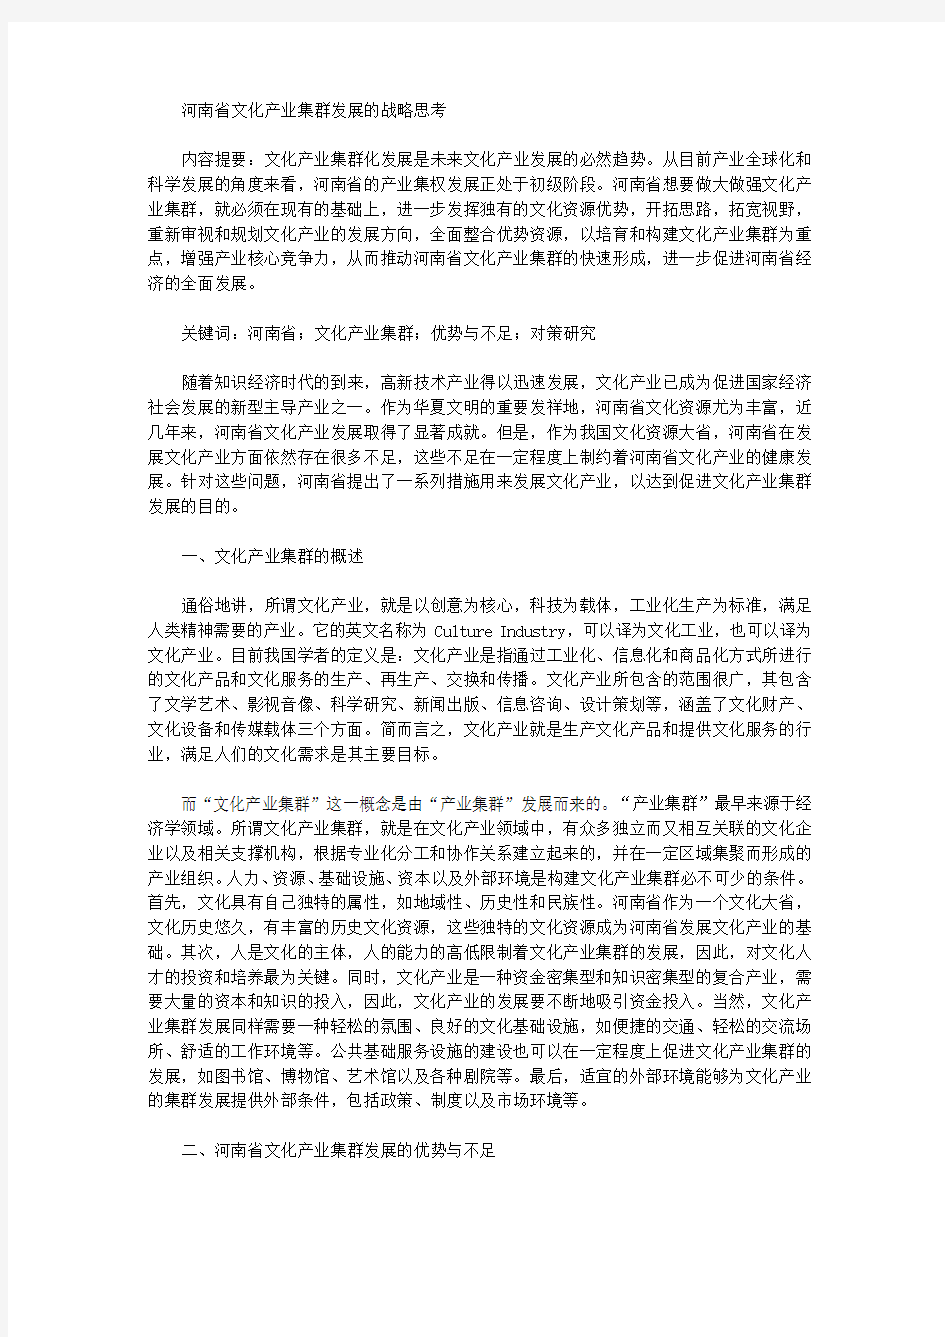 河南省文化产业集群发展的战略思考